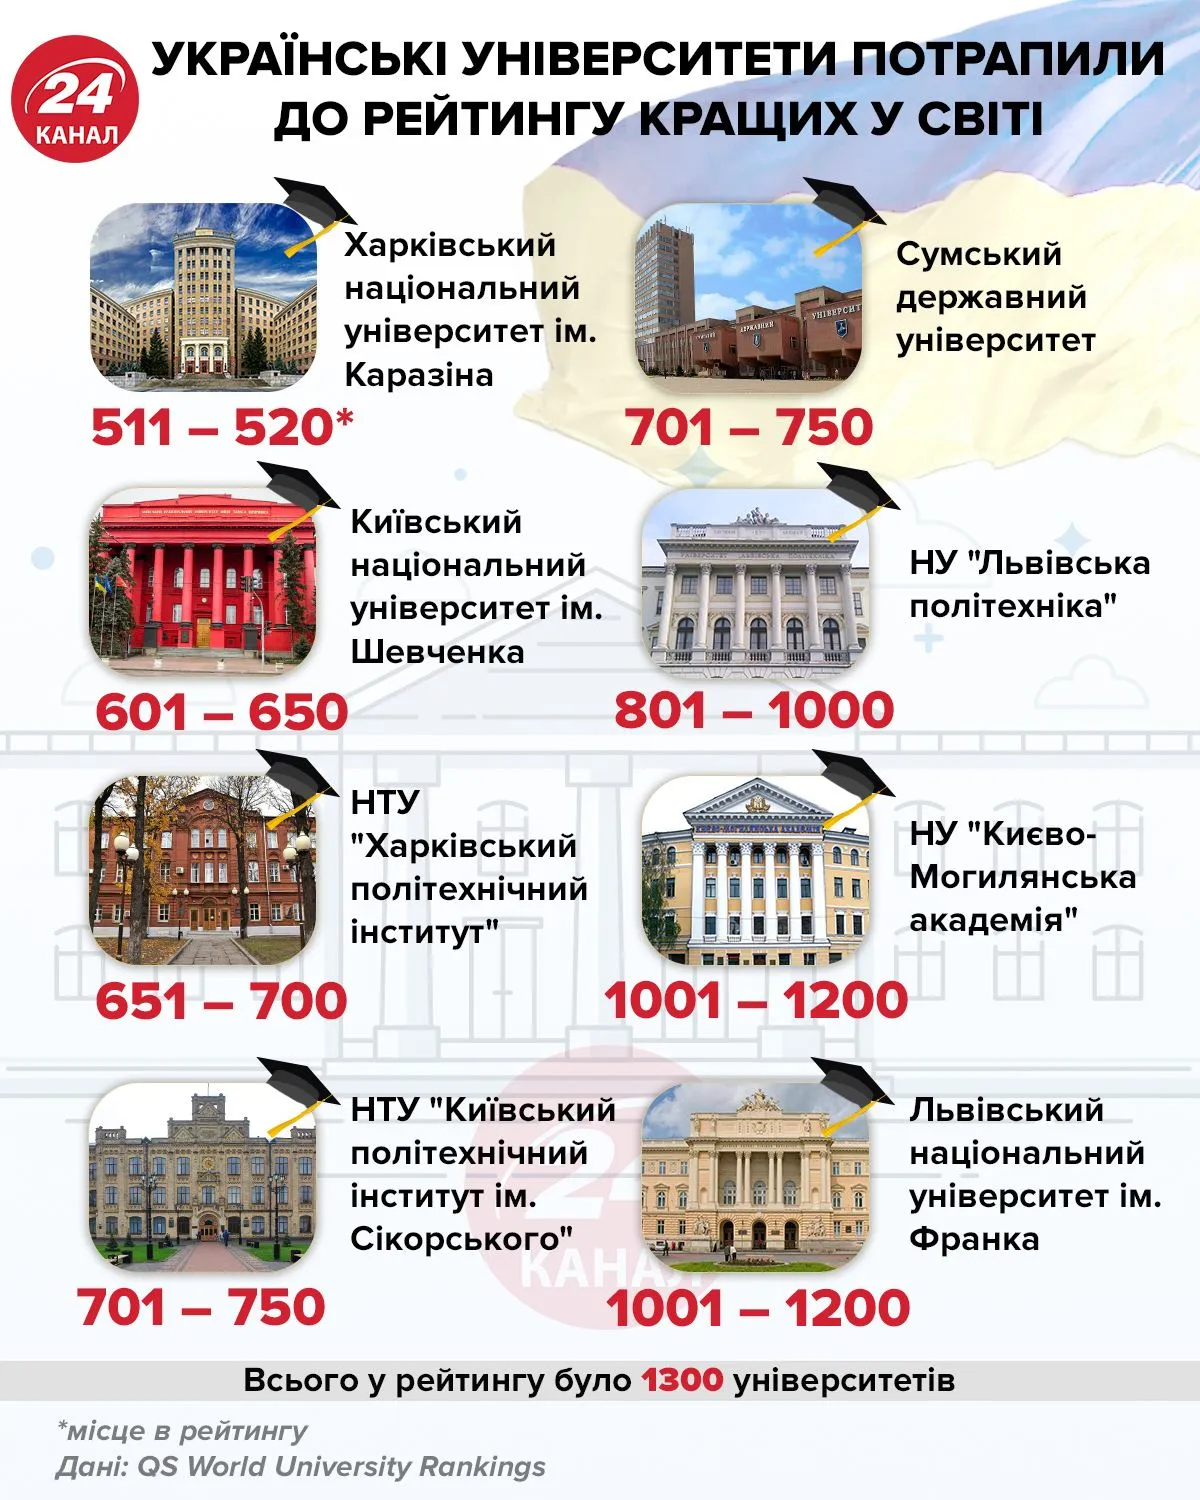 Украинские университеты, которые попали в рейтинг лучших вузов мира / Инфографика 24 канала